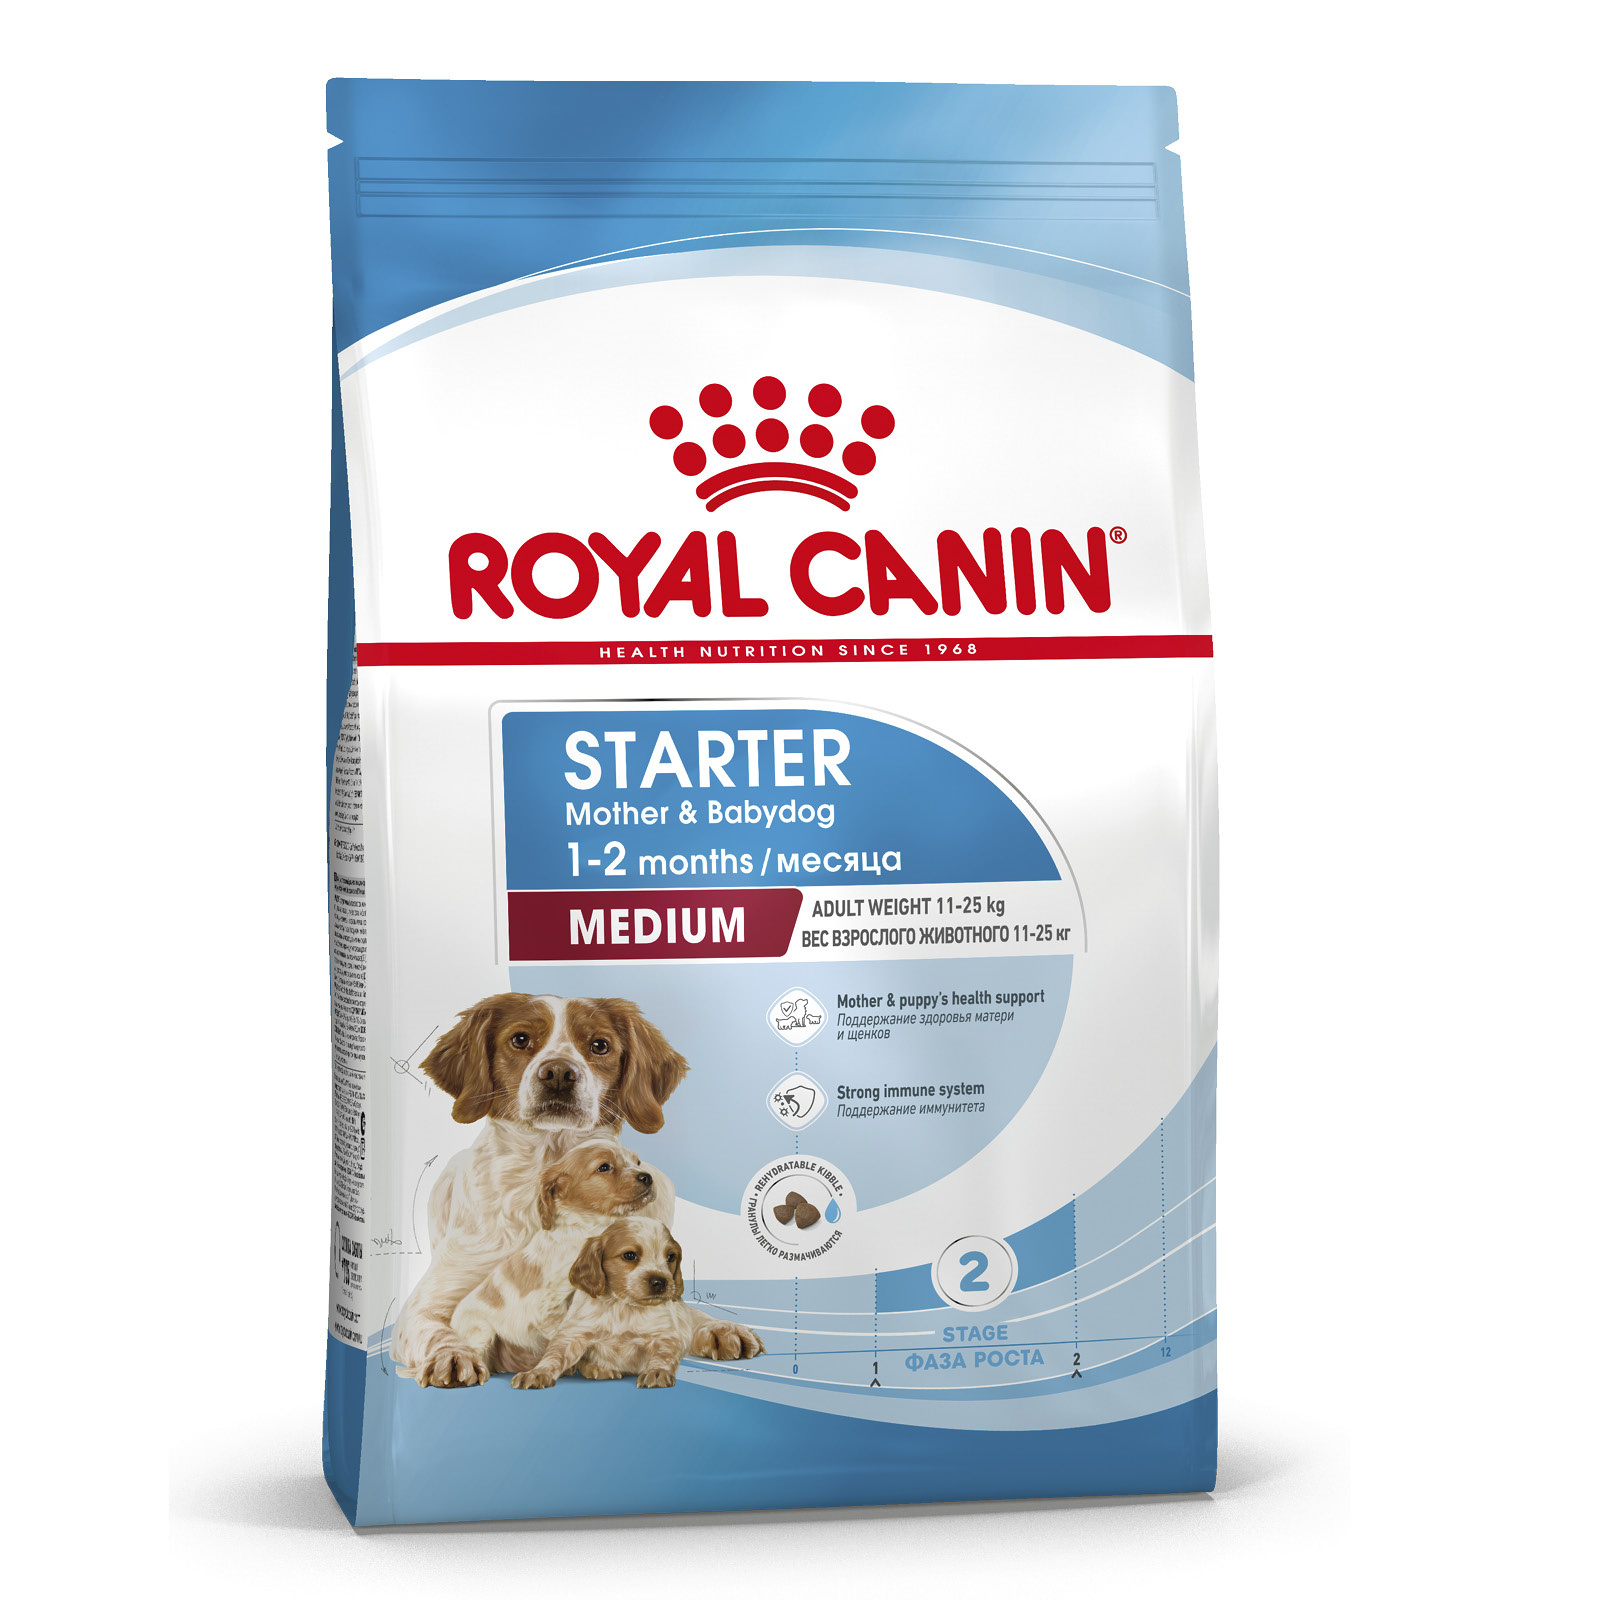 Royal Canin Корм Royal Canin для щенков средних пород от 3 недель до 2 месяцев, беременных и кормящих сук (12 кг) royal canin starter mousse влажный корм для щенков до 2 месяцев беременных и кормящих сук мусс в консервах 195 г